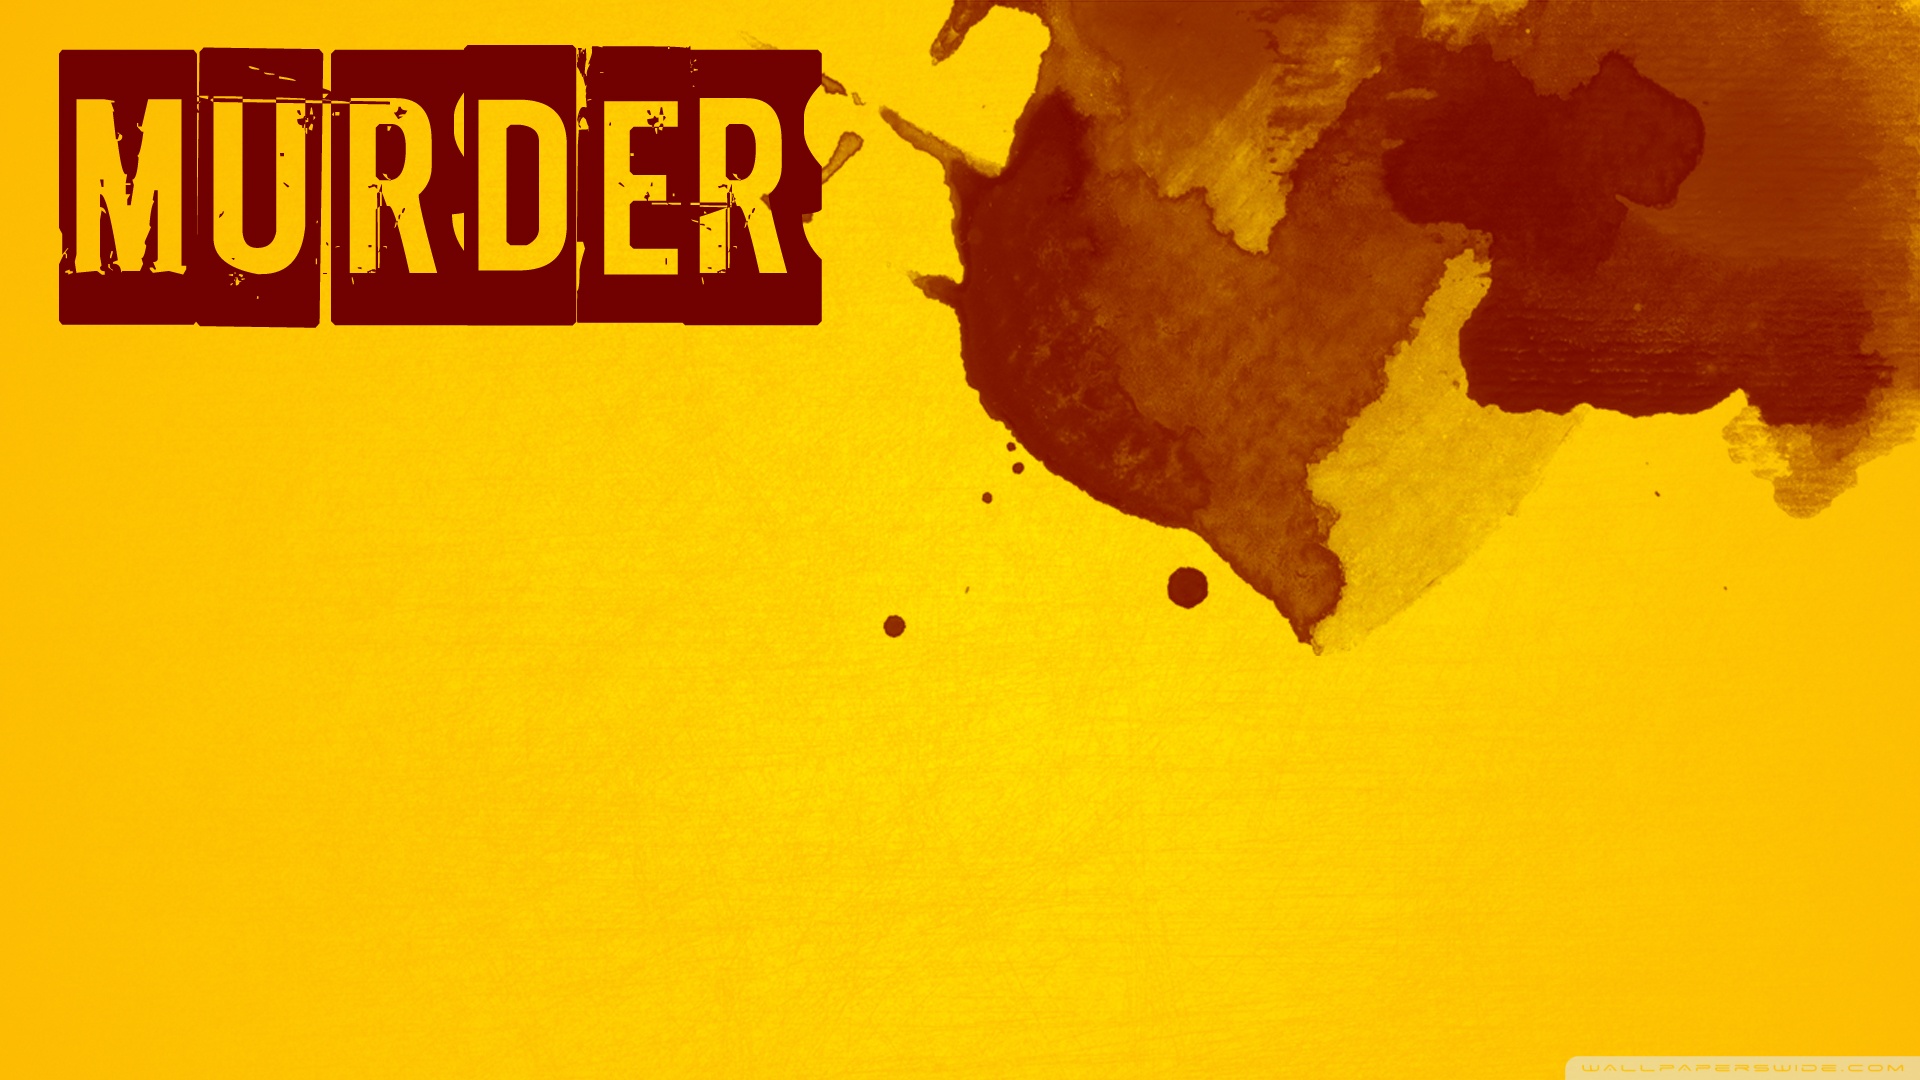 murder wallpaper by ZaX47hgC  Download on ZEDGE  04c9